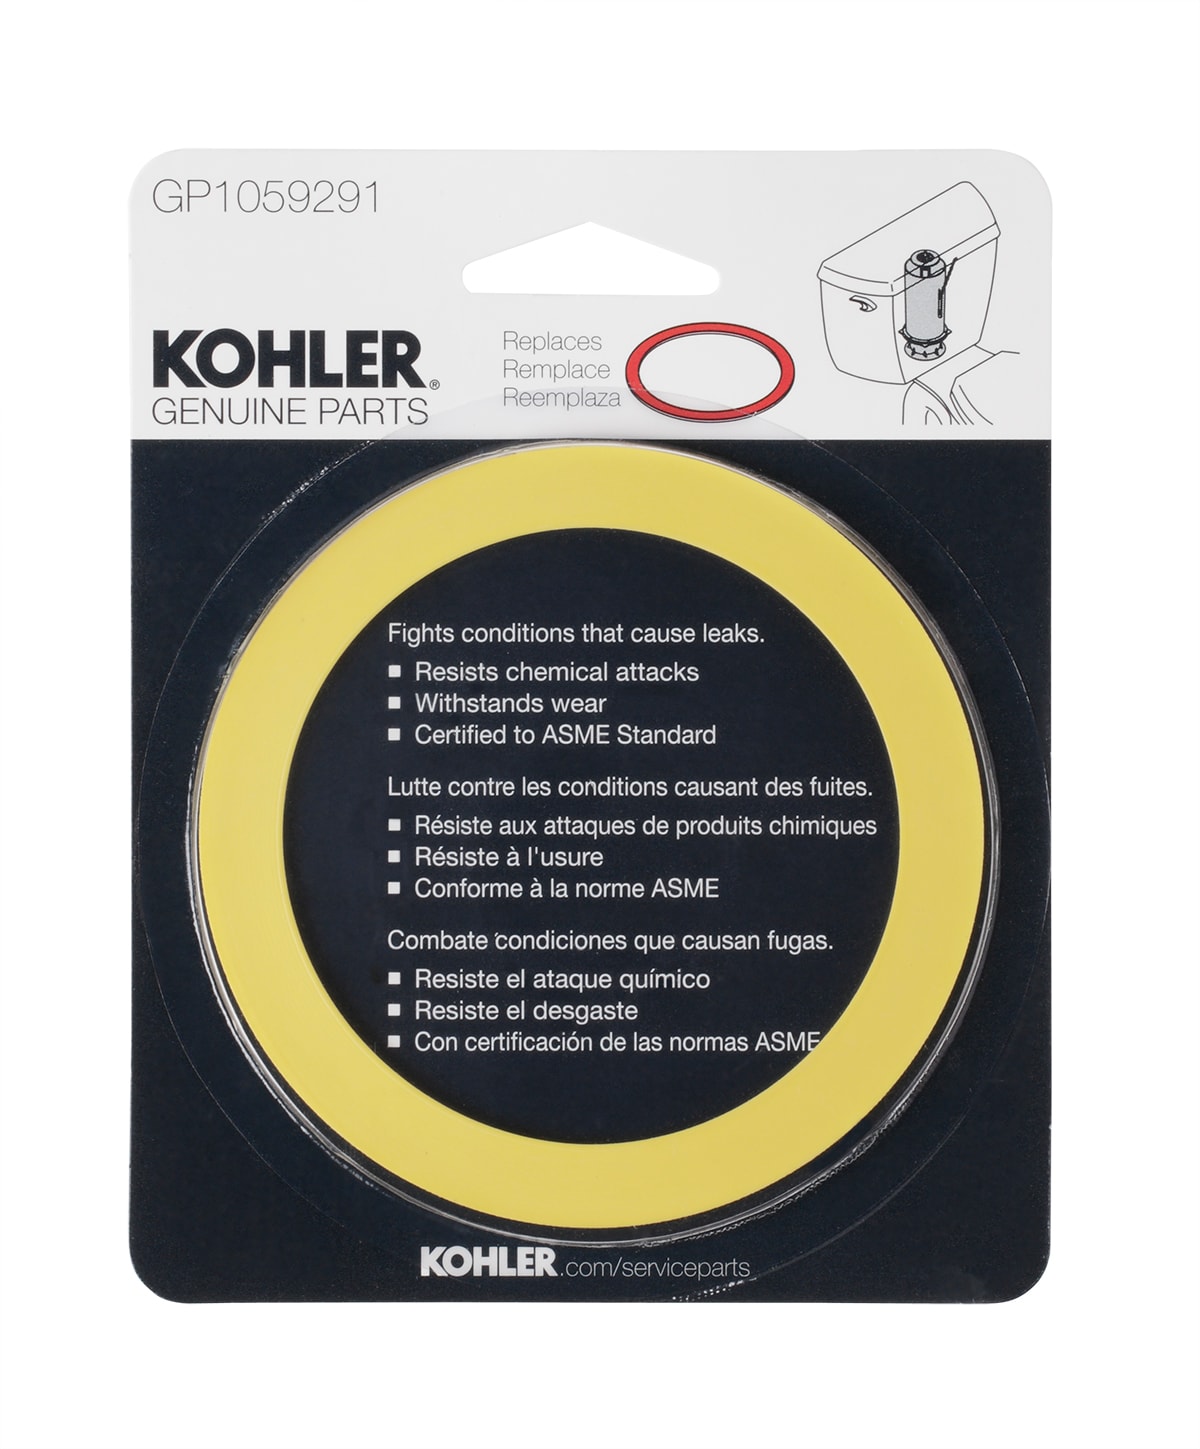 Genuine Kohler RING Part # X-269-34-S